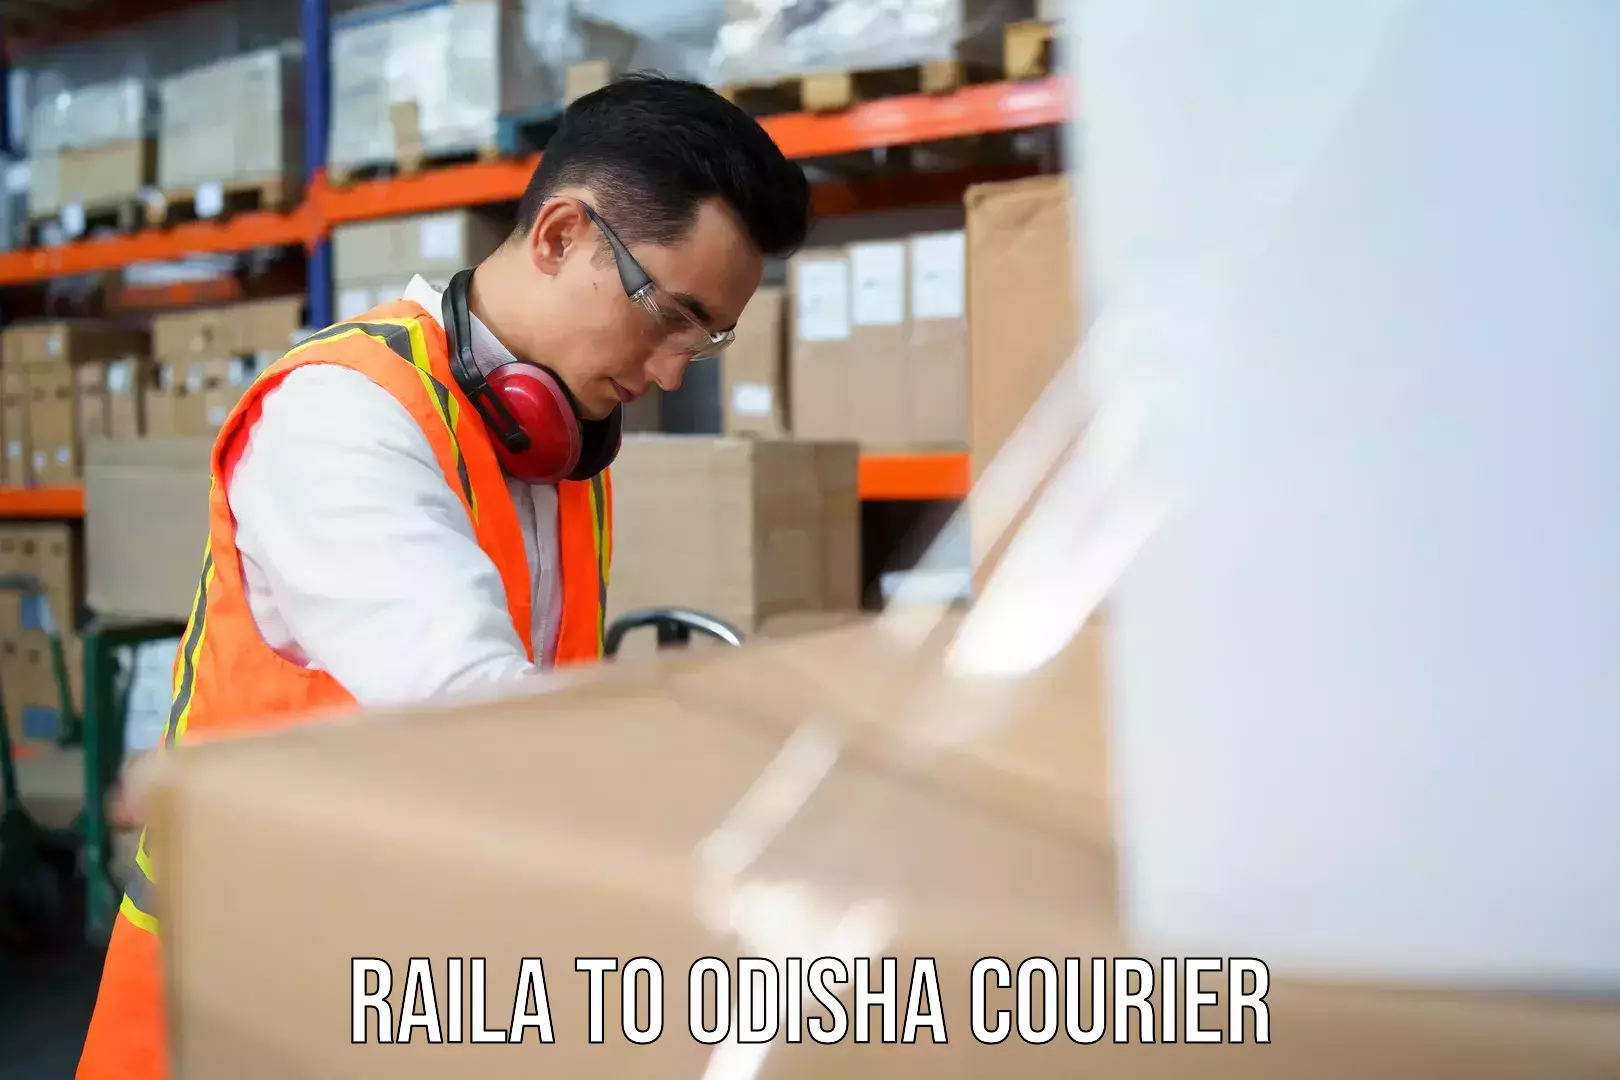 Courier service comparison Raila to Riamal